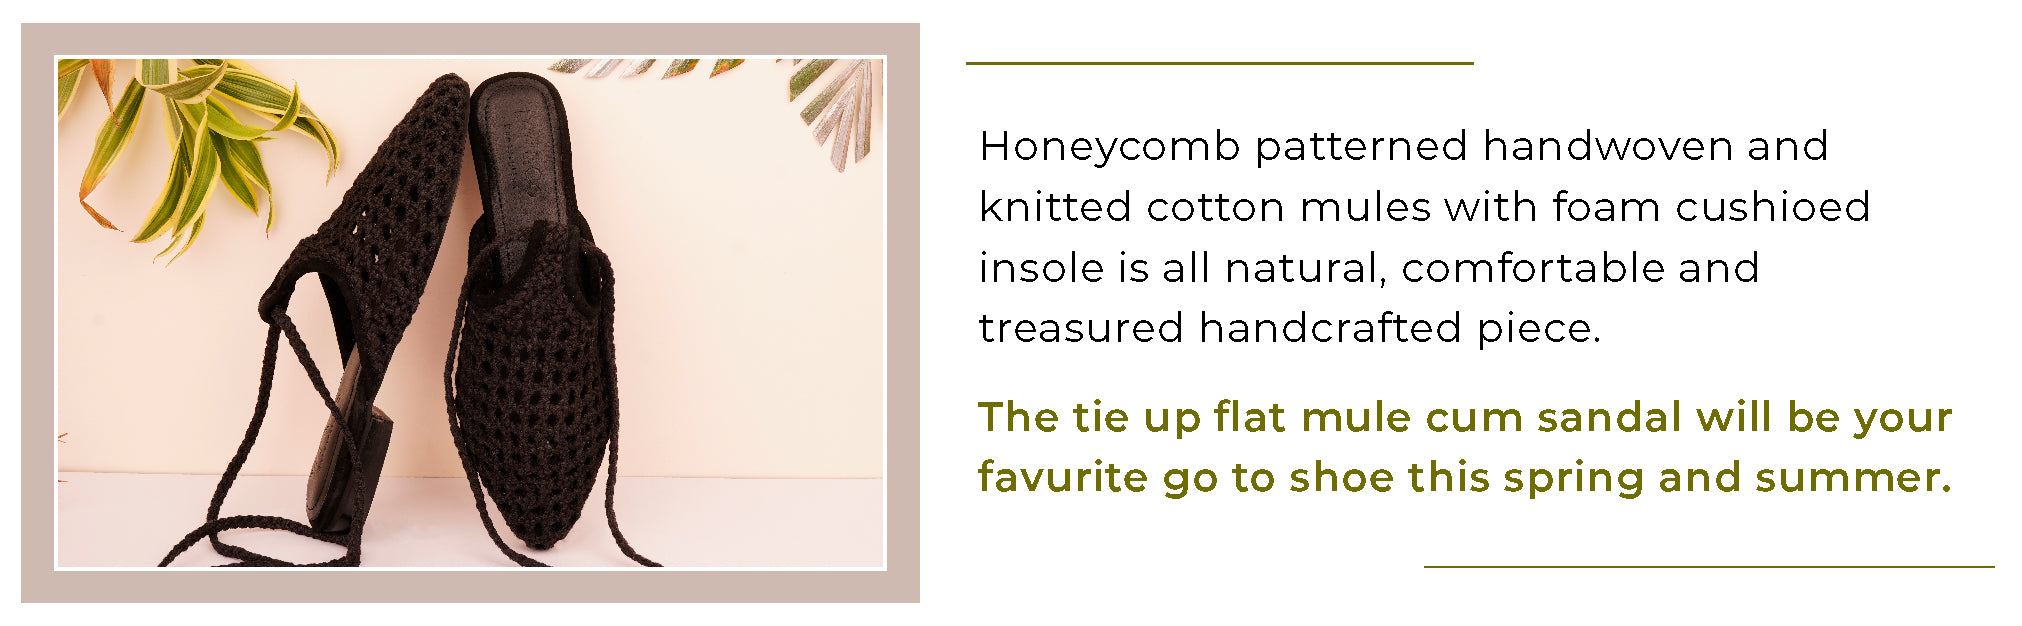 TUTSI Gold Handwoven Honeycomb Tie Up Flat Mules